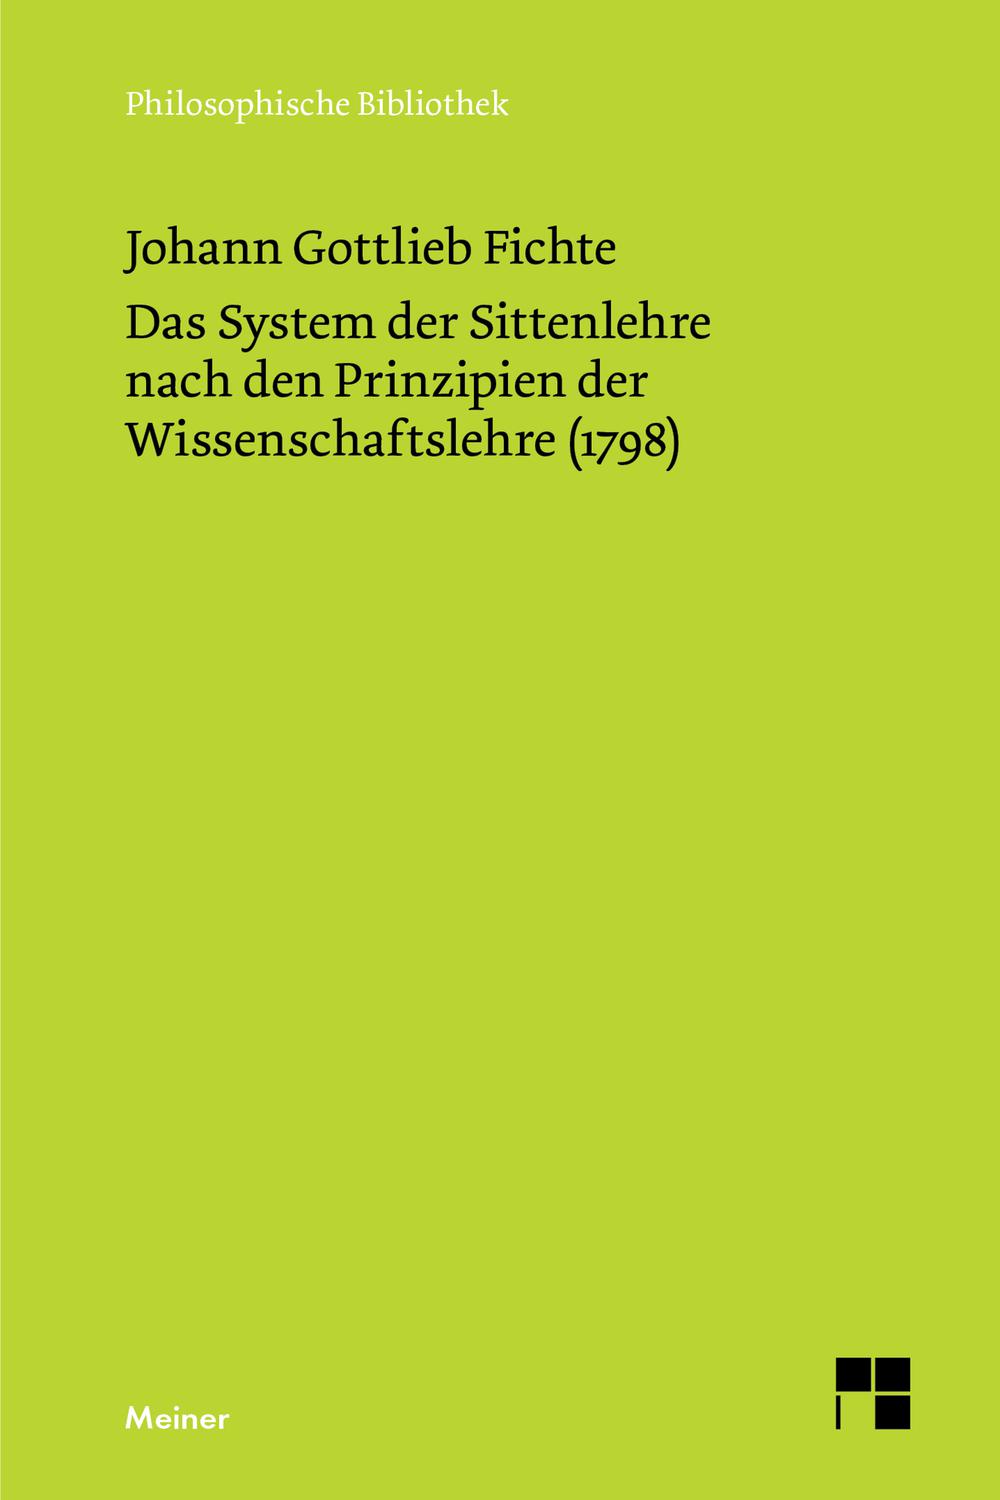 Das System der Sittenlehre nach den Prinzipien der Wissenschaftslehre (1798) - Johann Gottlieb Fichte,,